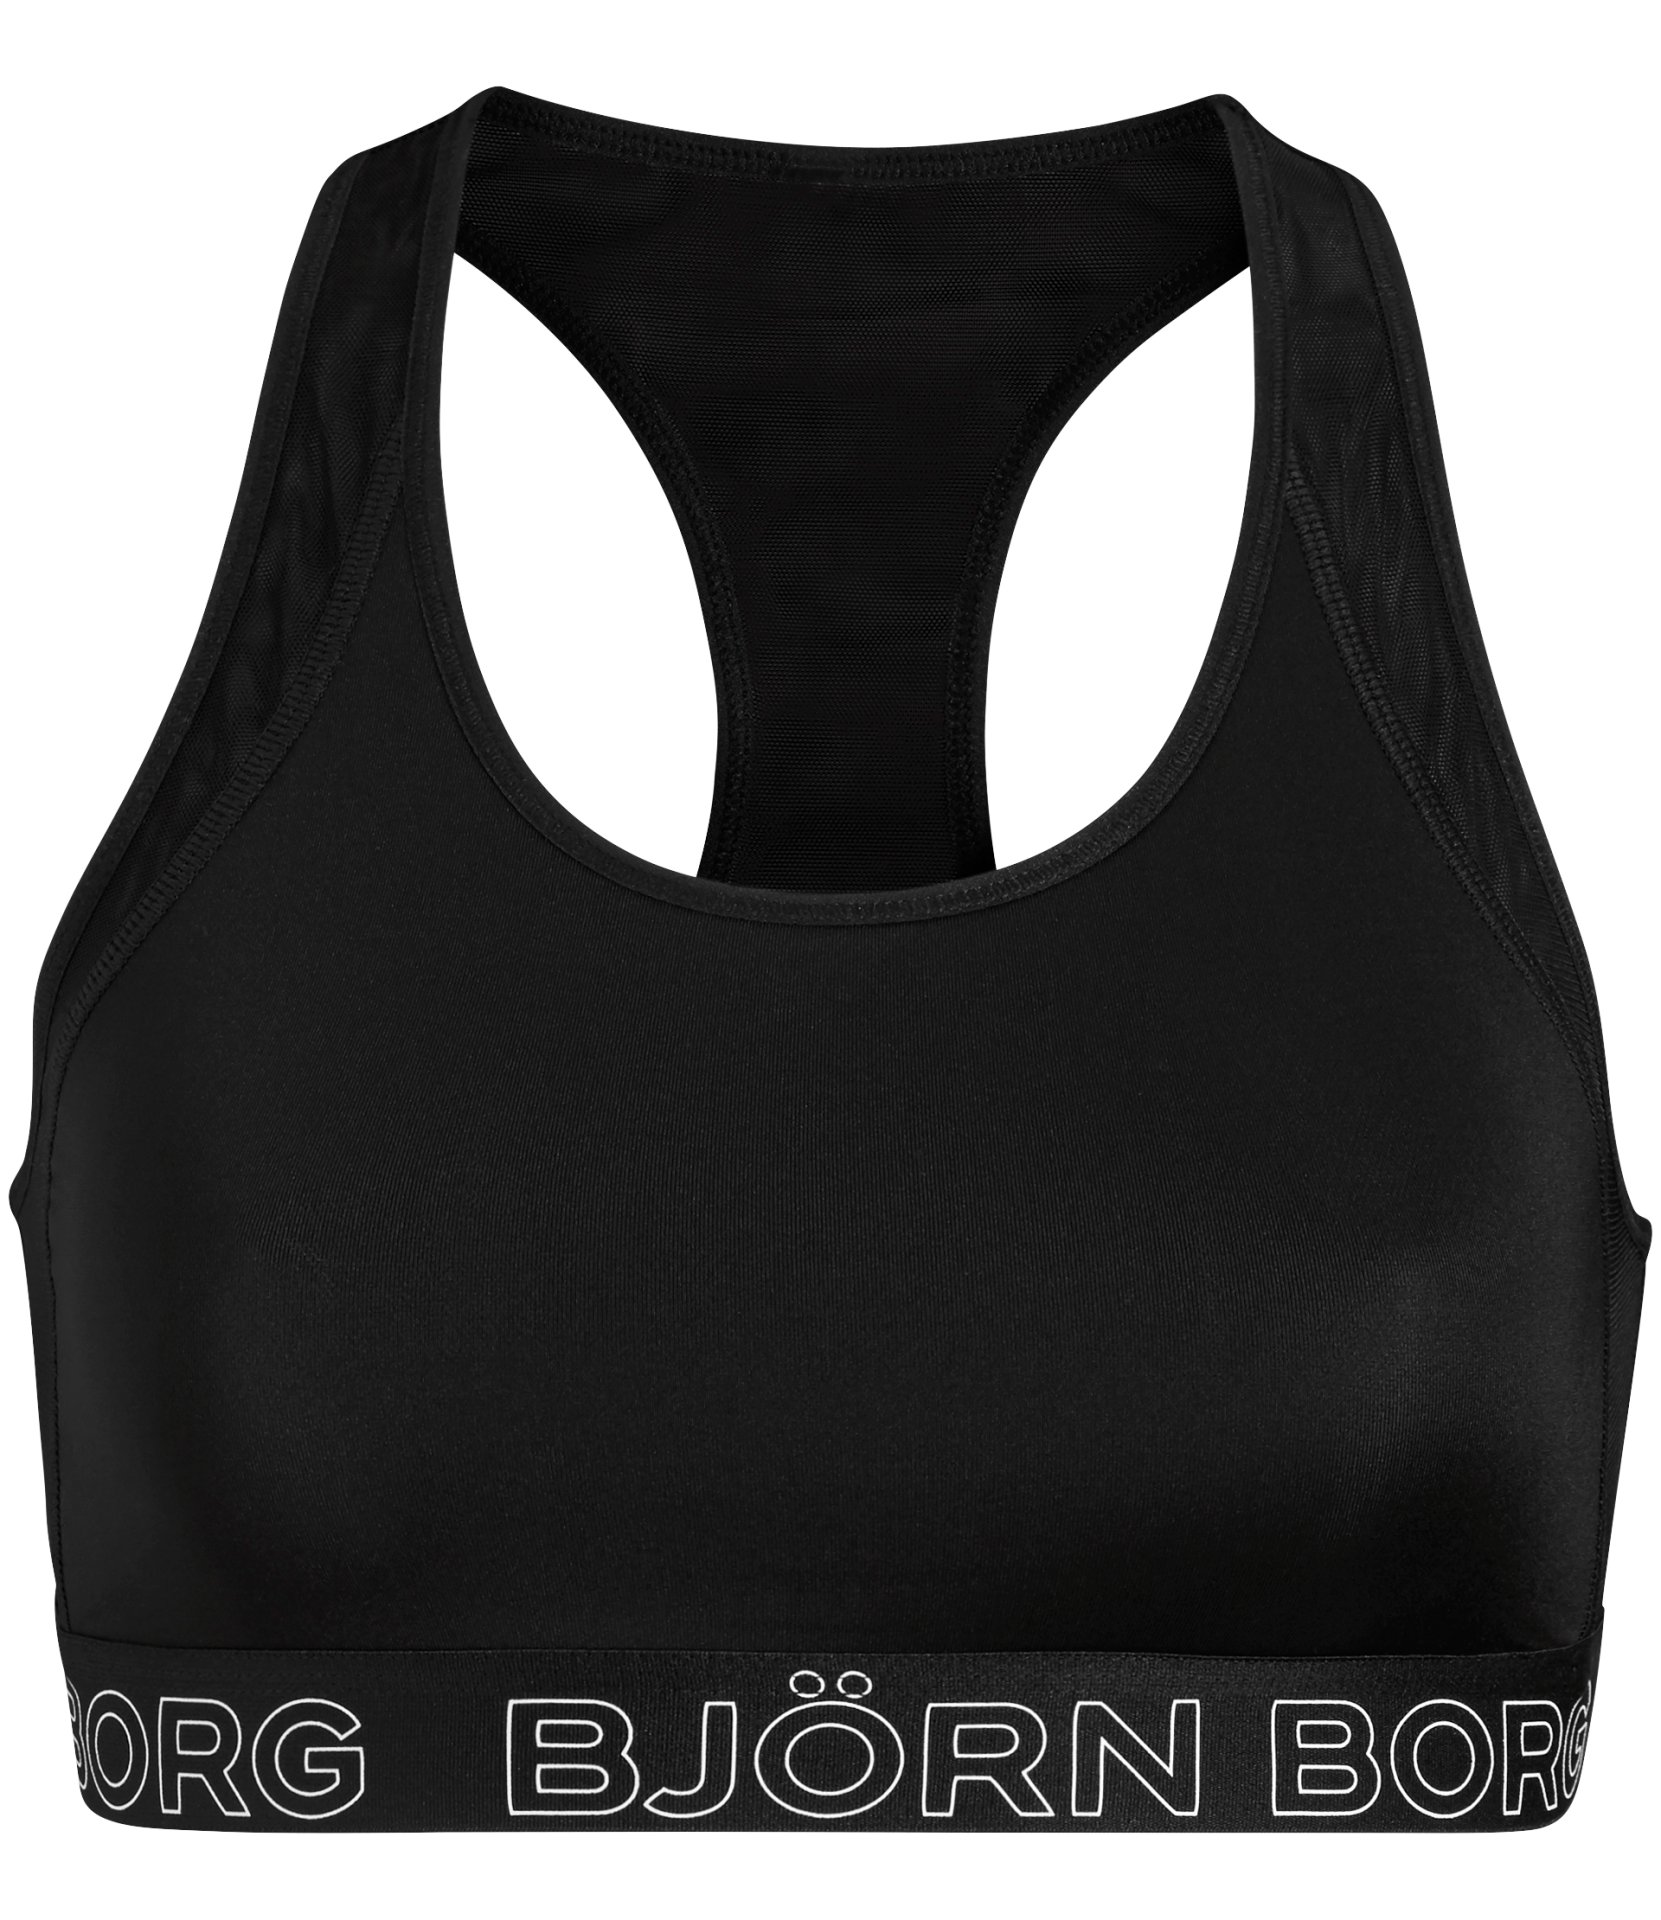 Γυναικεία/Ρούχα/Αθλητικά/Μπουστάκια BJORN BORG - Γυναικείο αθλητικό μπουστάκι BJORN BORG SOFT μαύρο